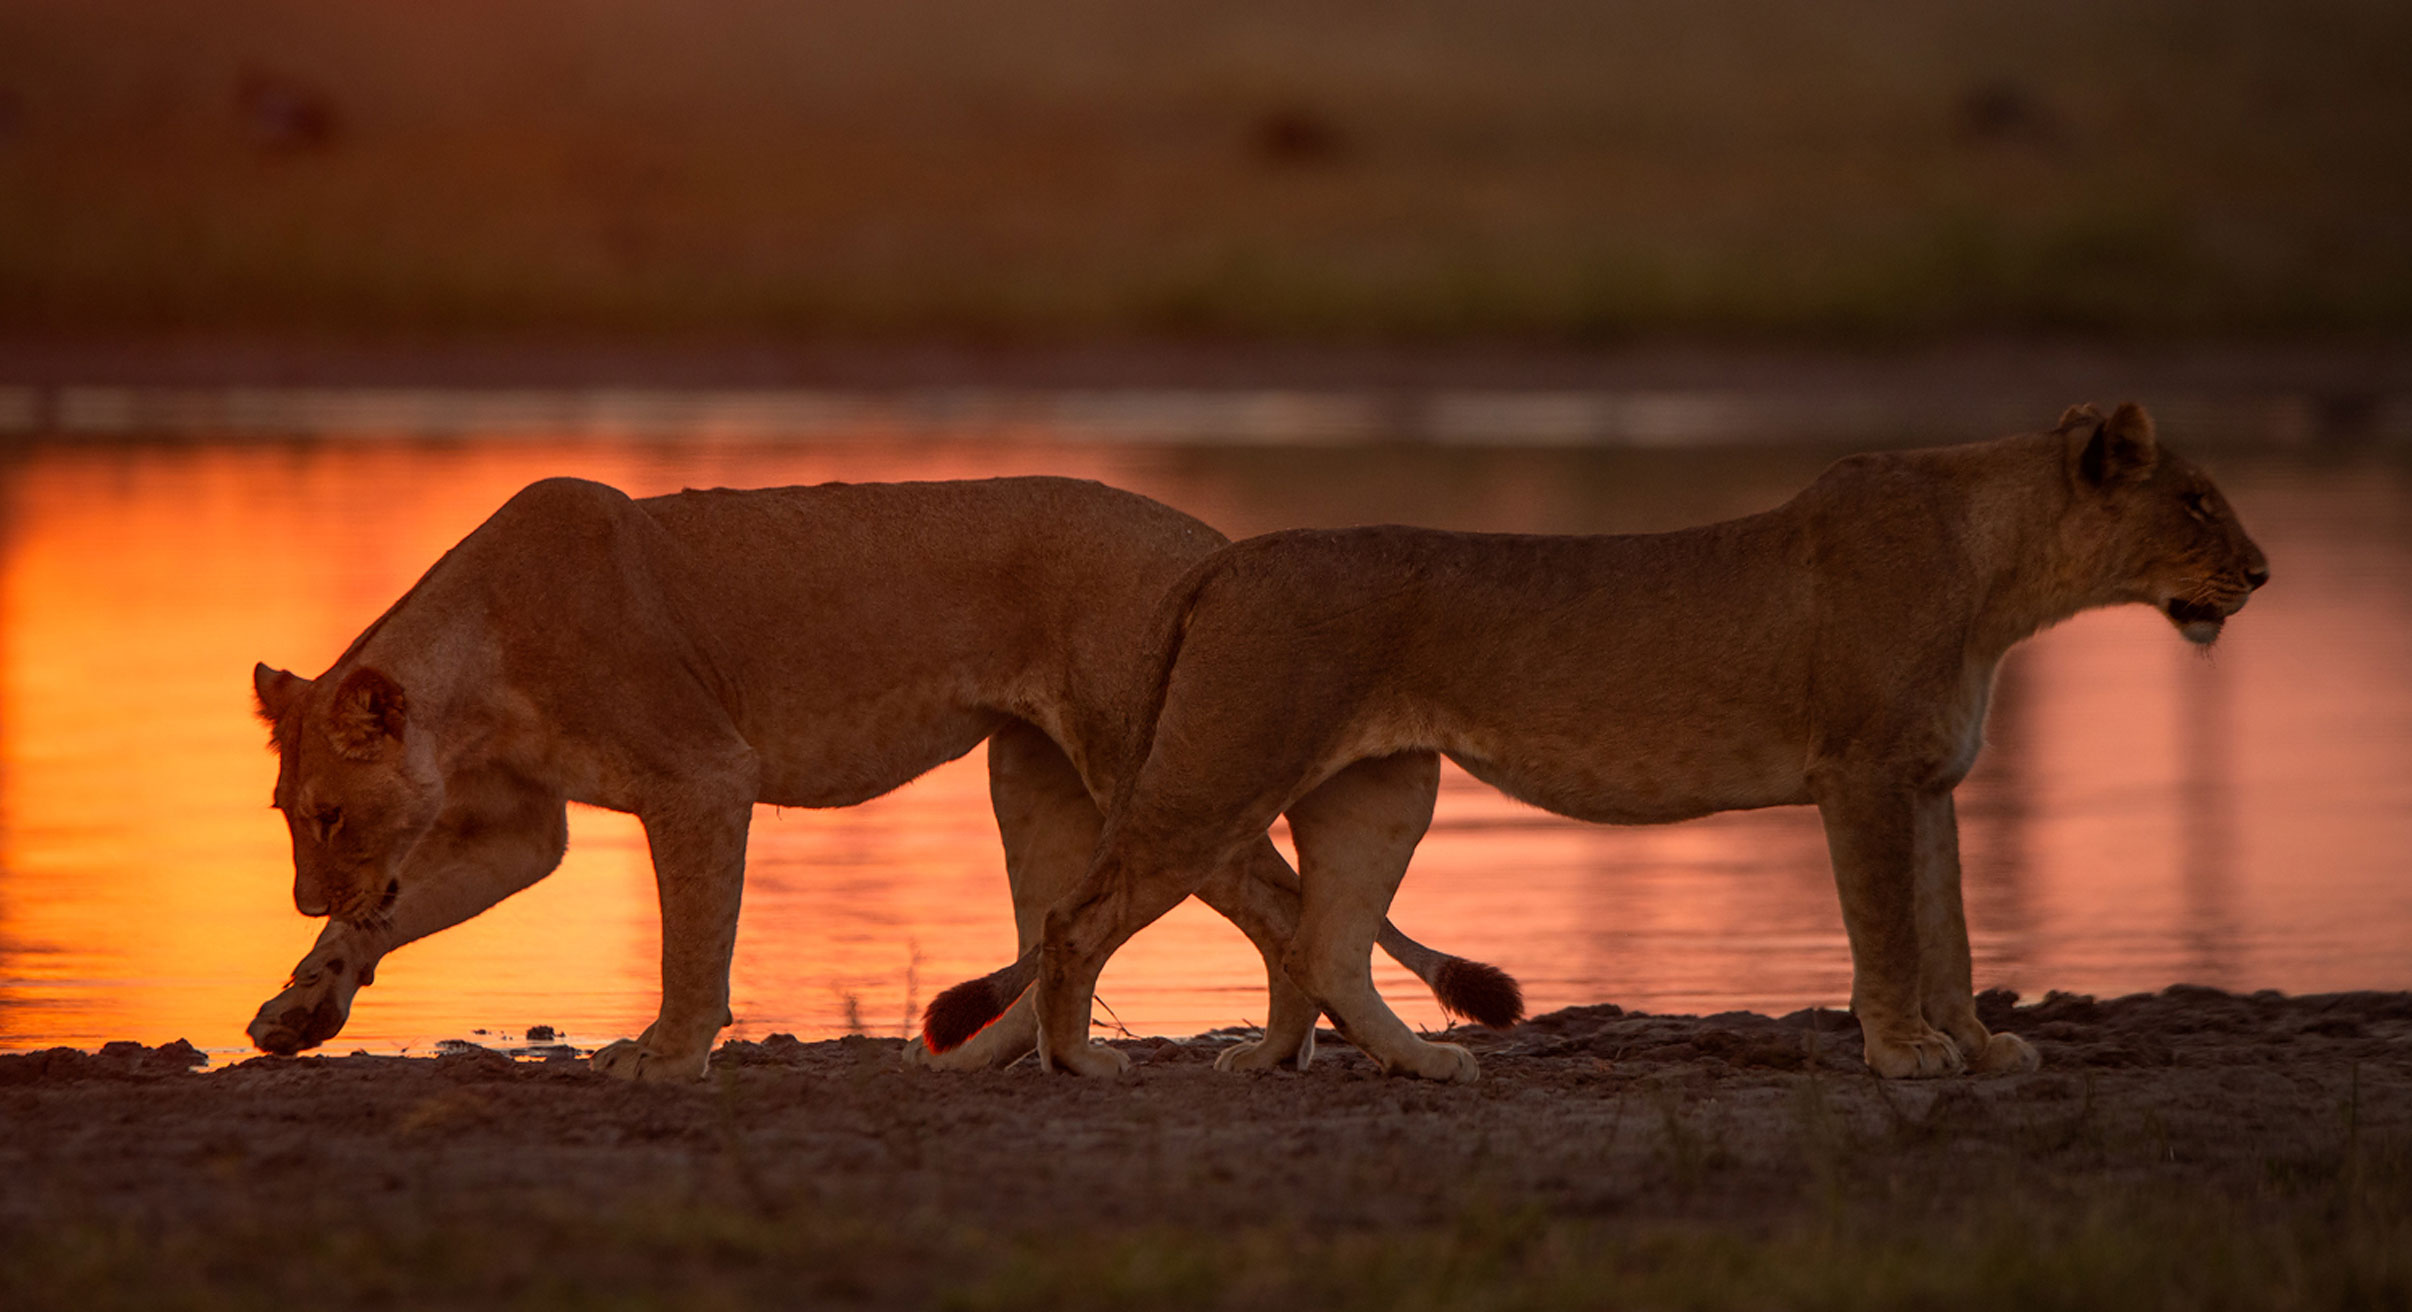 Lionesses in the Okavango Delta, Botswana